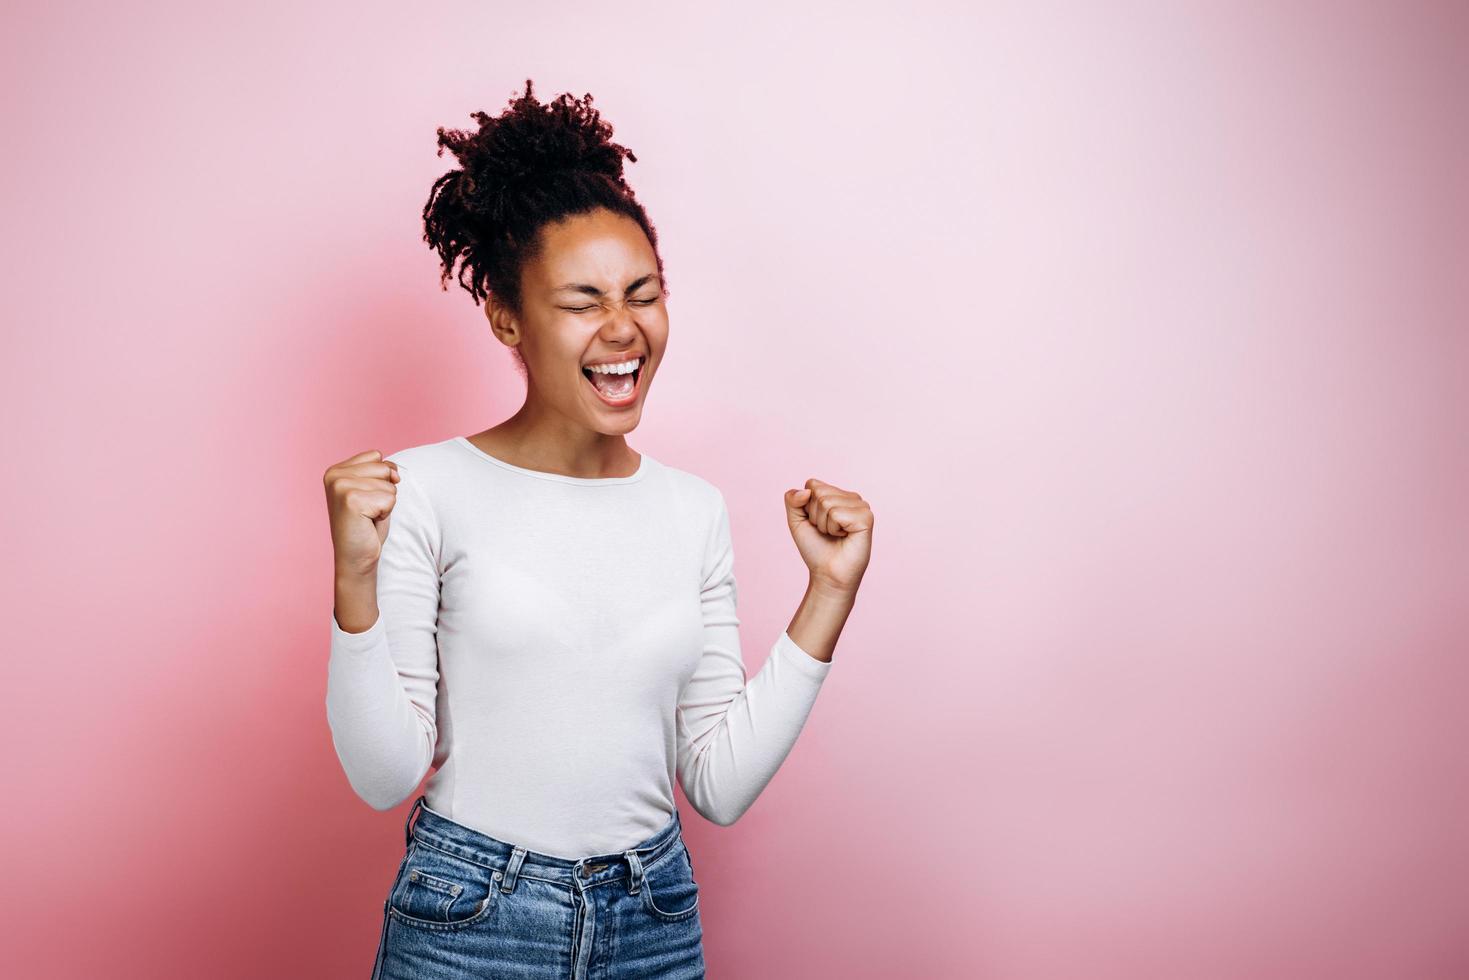 La giovane ragazza africana felice fa il gesto del vincitore in posa isolata su sfondo rosa foto